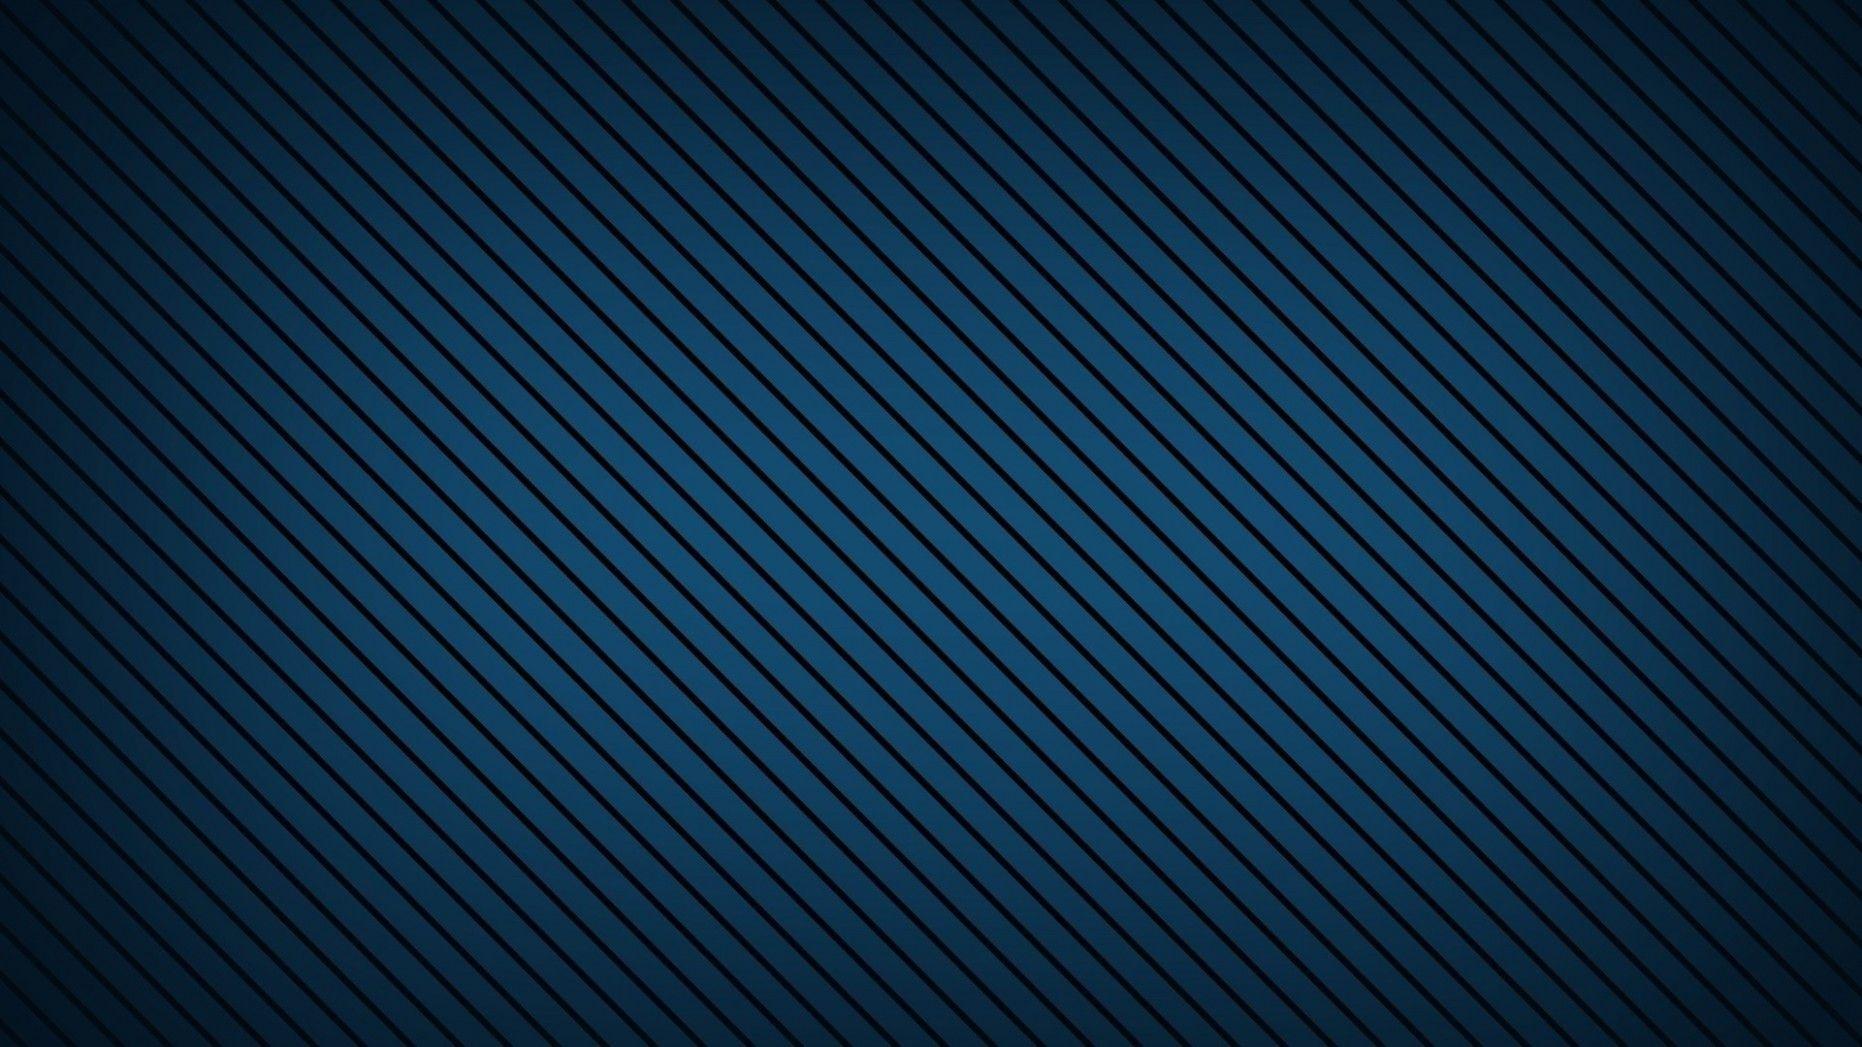 Blue Fabric Pattern ❤ 20K HD Desktop Wallpaper For 20K Ultra HD TV